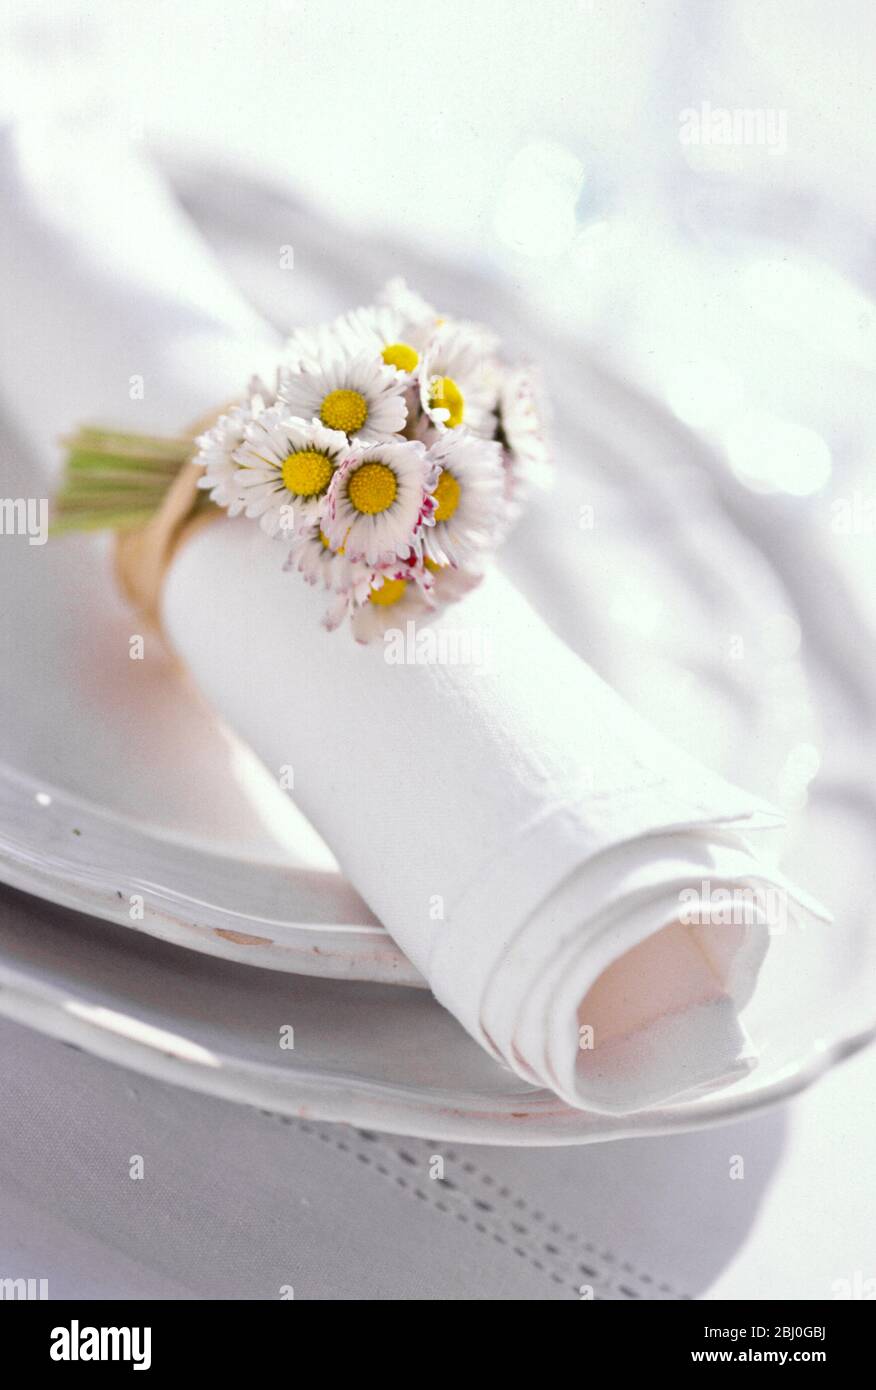 Serviette blanche roulée attachée avec un bouquet de daisies, sur des plaques blanches. - Banque D'Images